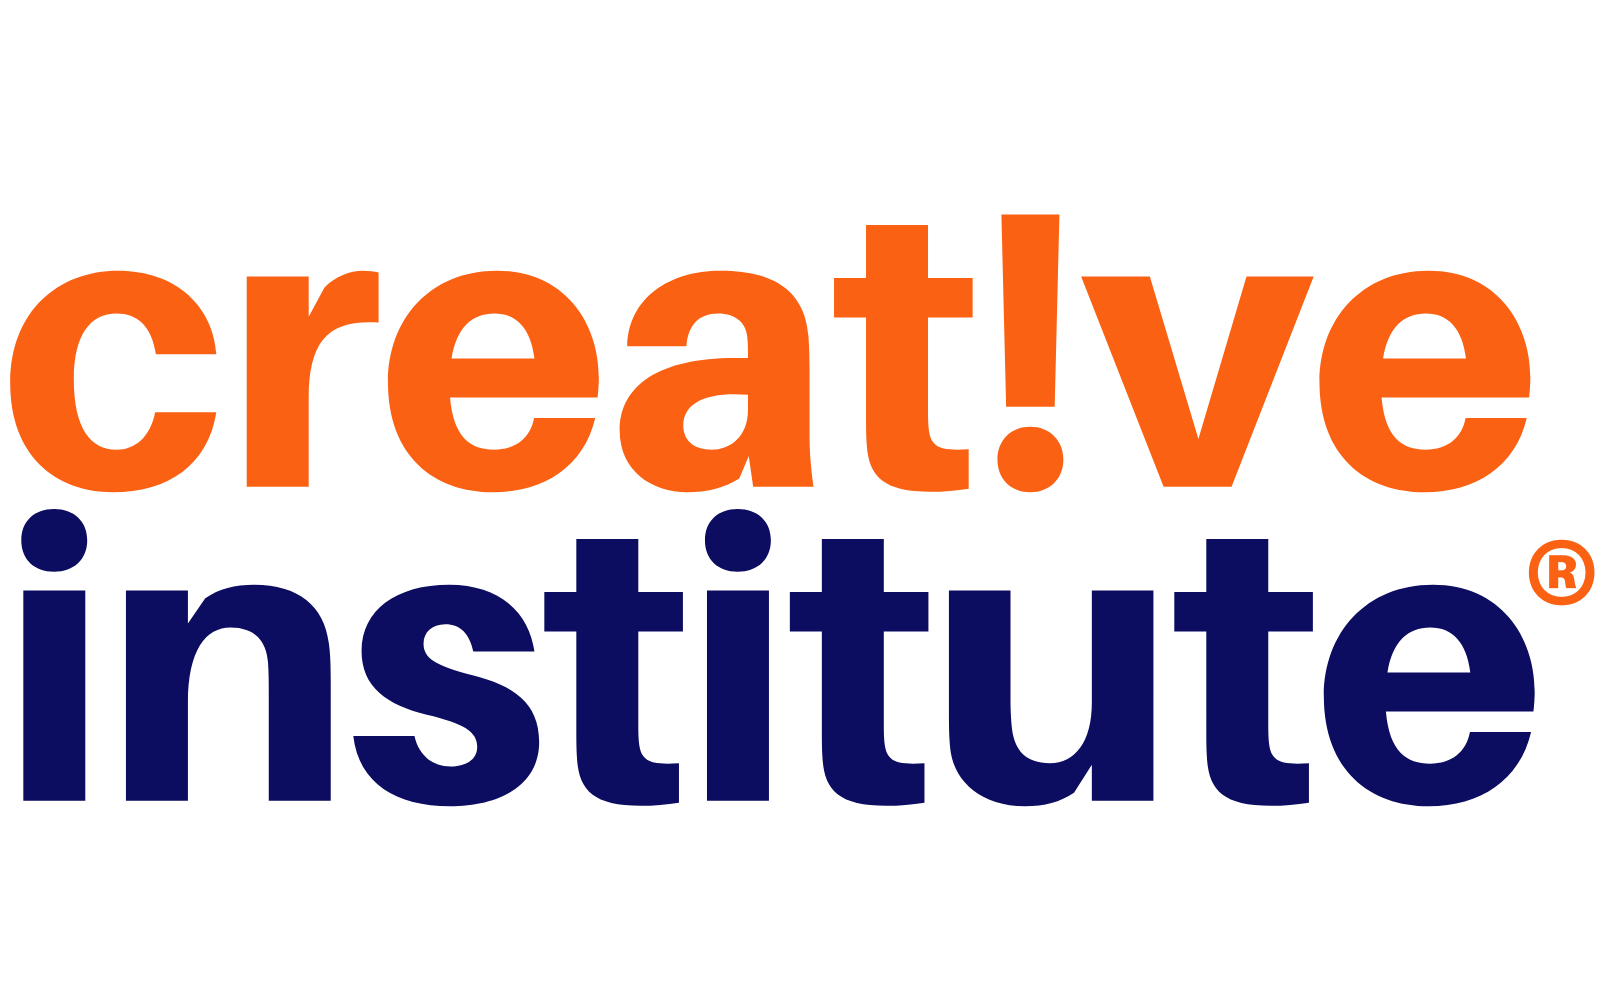 Creative Institute